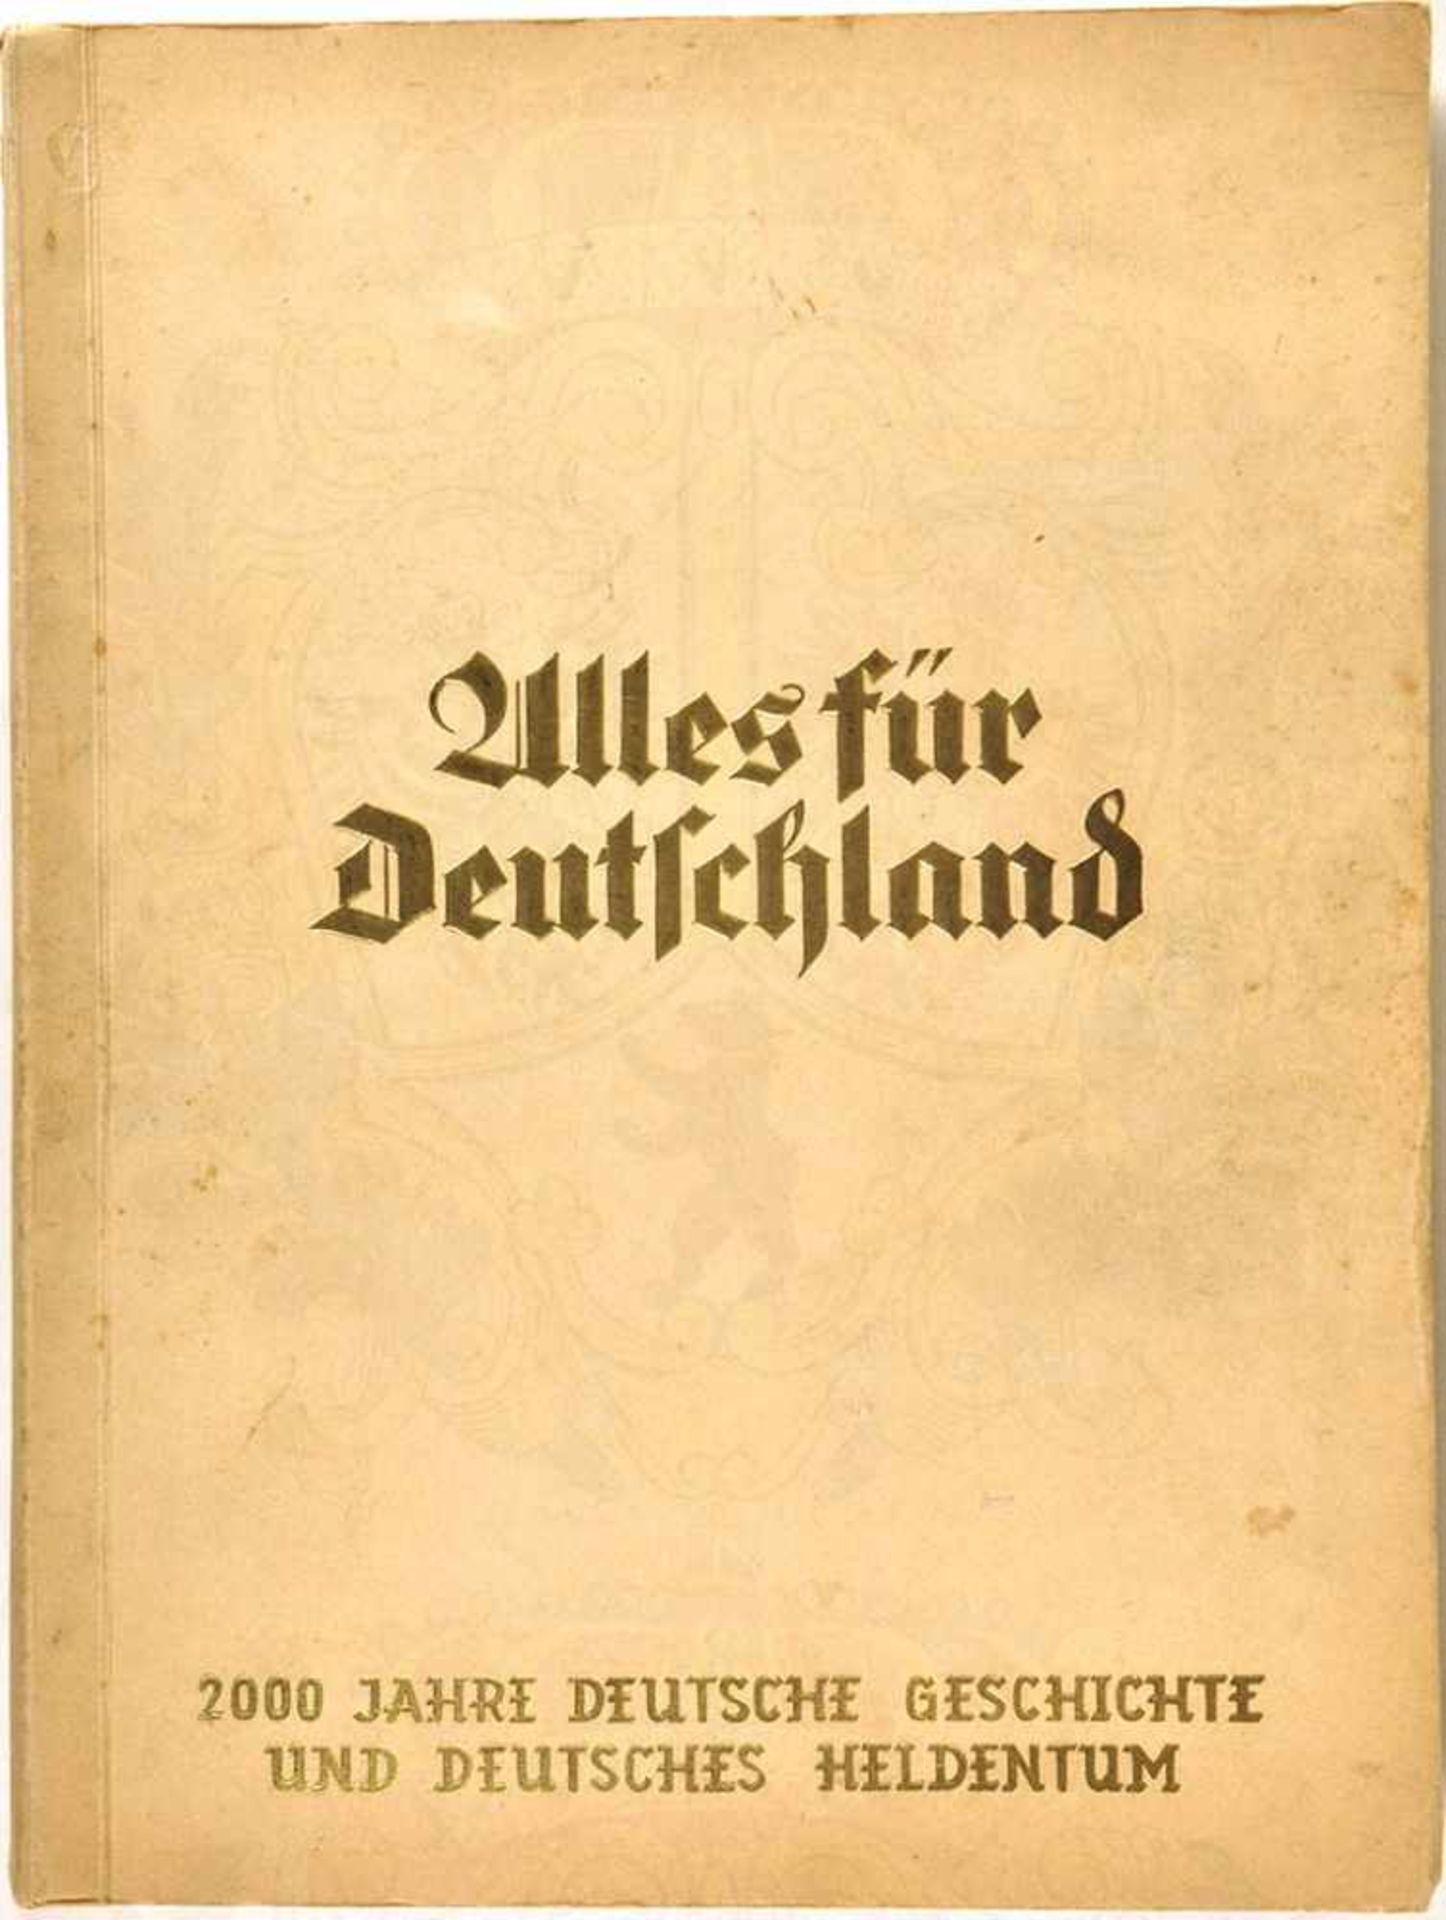 ALLES FÜR DEUTSCHLAND, „2000 Jahre (...) deutsches Heldentum“, Yosma 1934, 359 farb. Bilder (Nr. 332